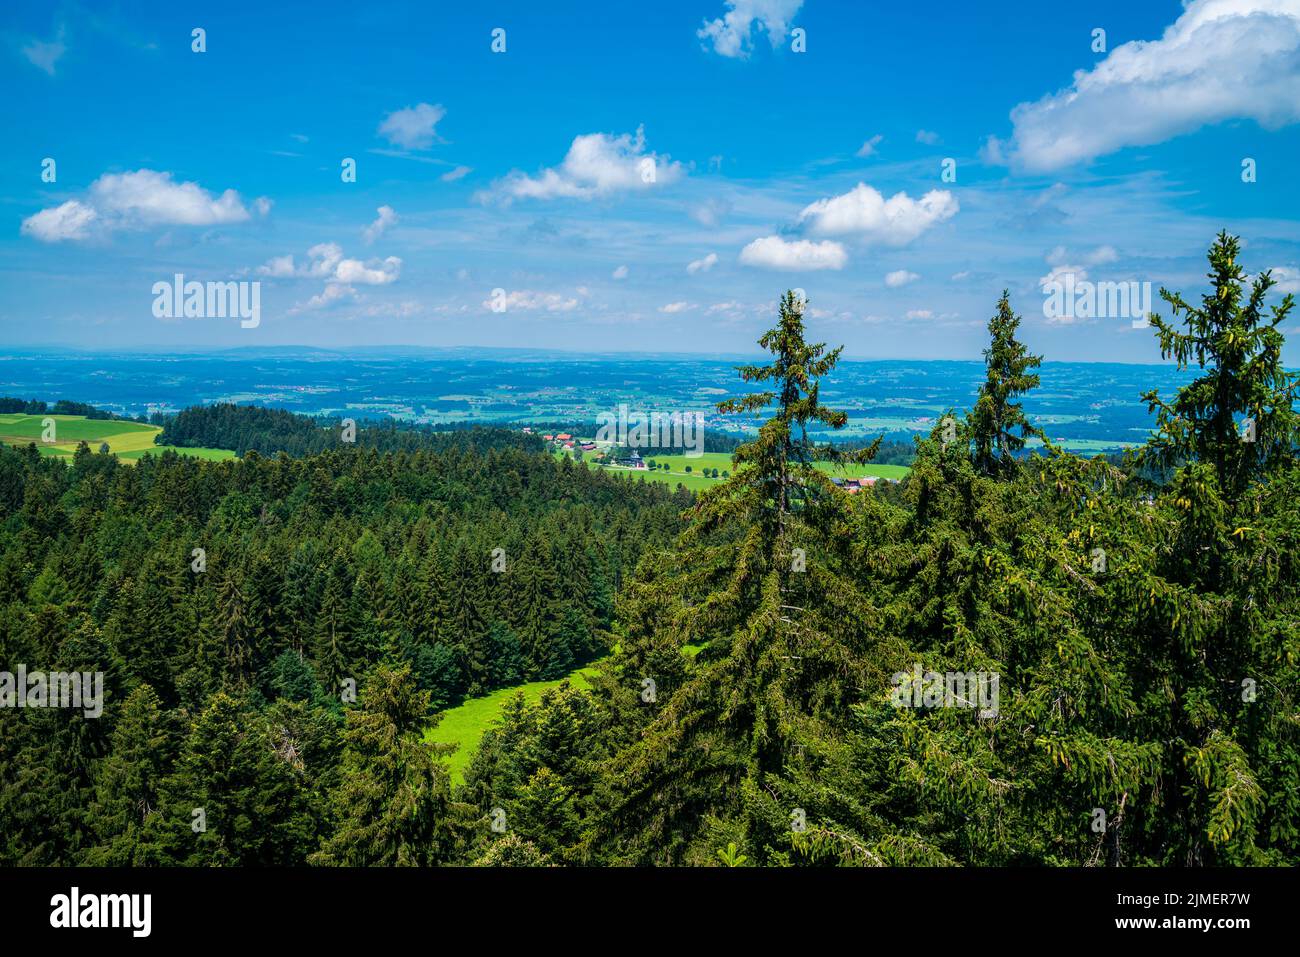 Alemania, vista panorámica sobre las copas de los árboles del bosque y el paisaje verde de la naturaleza del paraíso del senderismo Allgäu Foto de stock